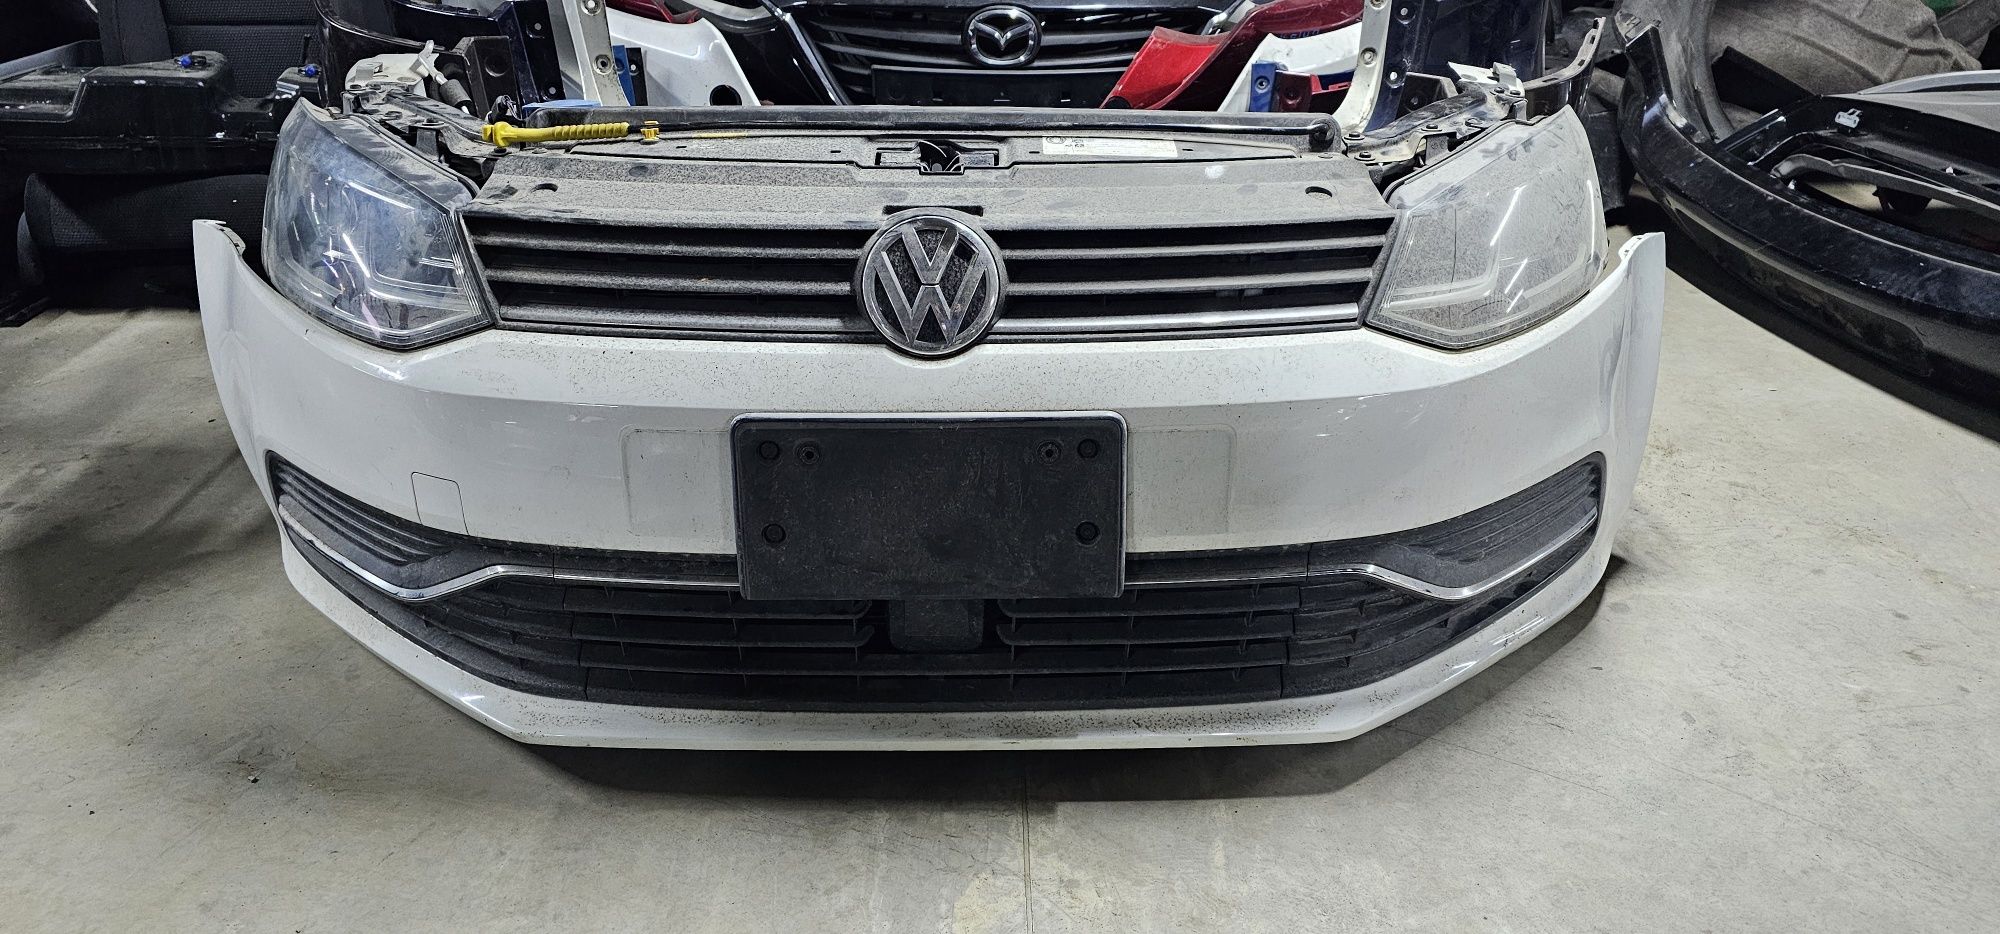 Бампер Фара Решітка Решётка VW Polo 6R  Cross Lift Поло 2014